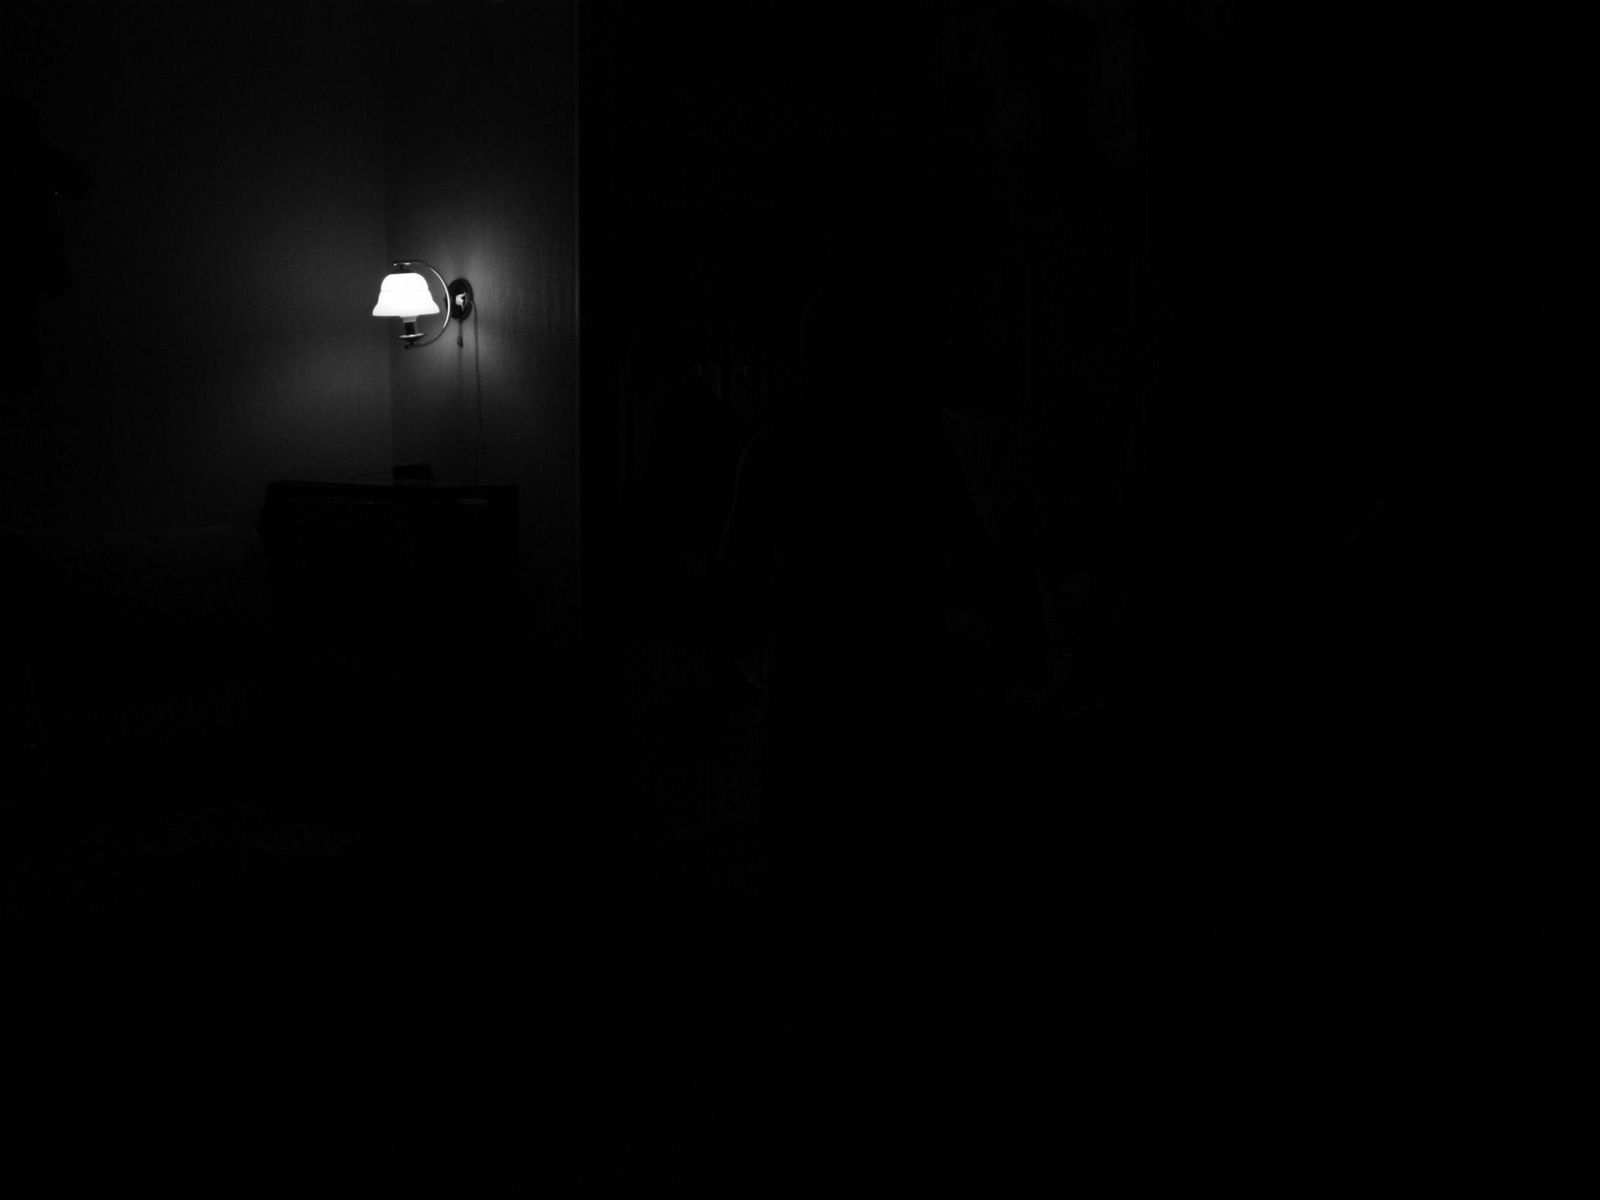 Погасив свет комната погрузилась во мрак впр. Черный свет. Свет в темной комнате. Комната в темноте. Свет из тьмы.